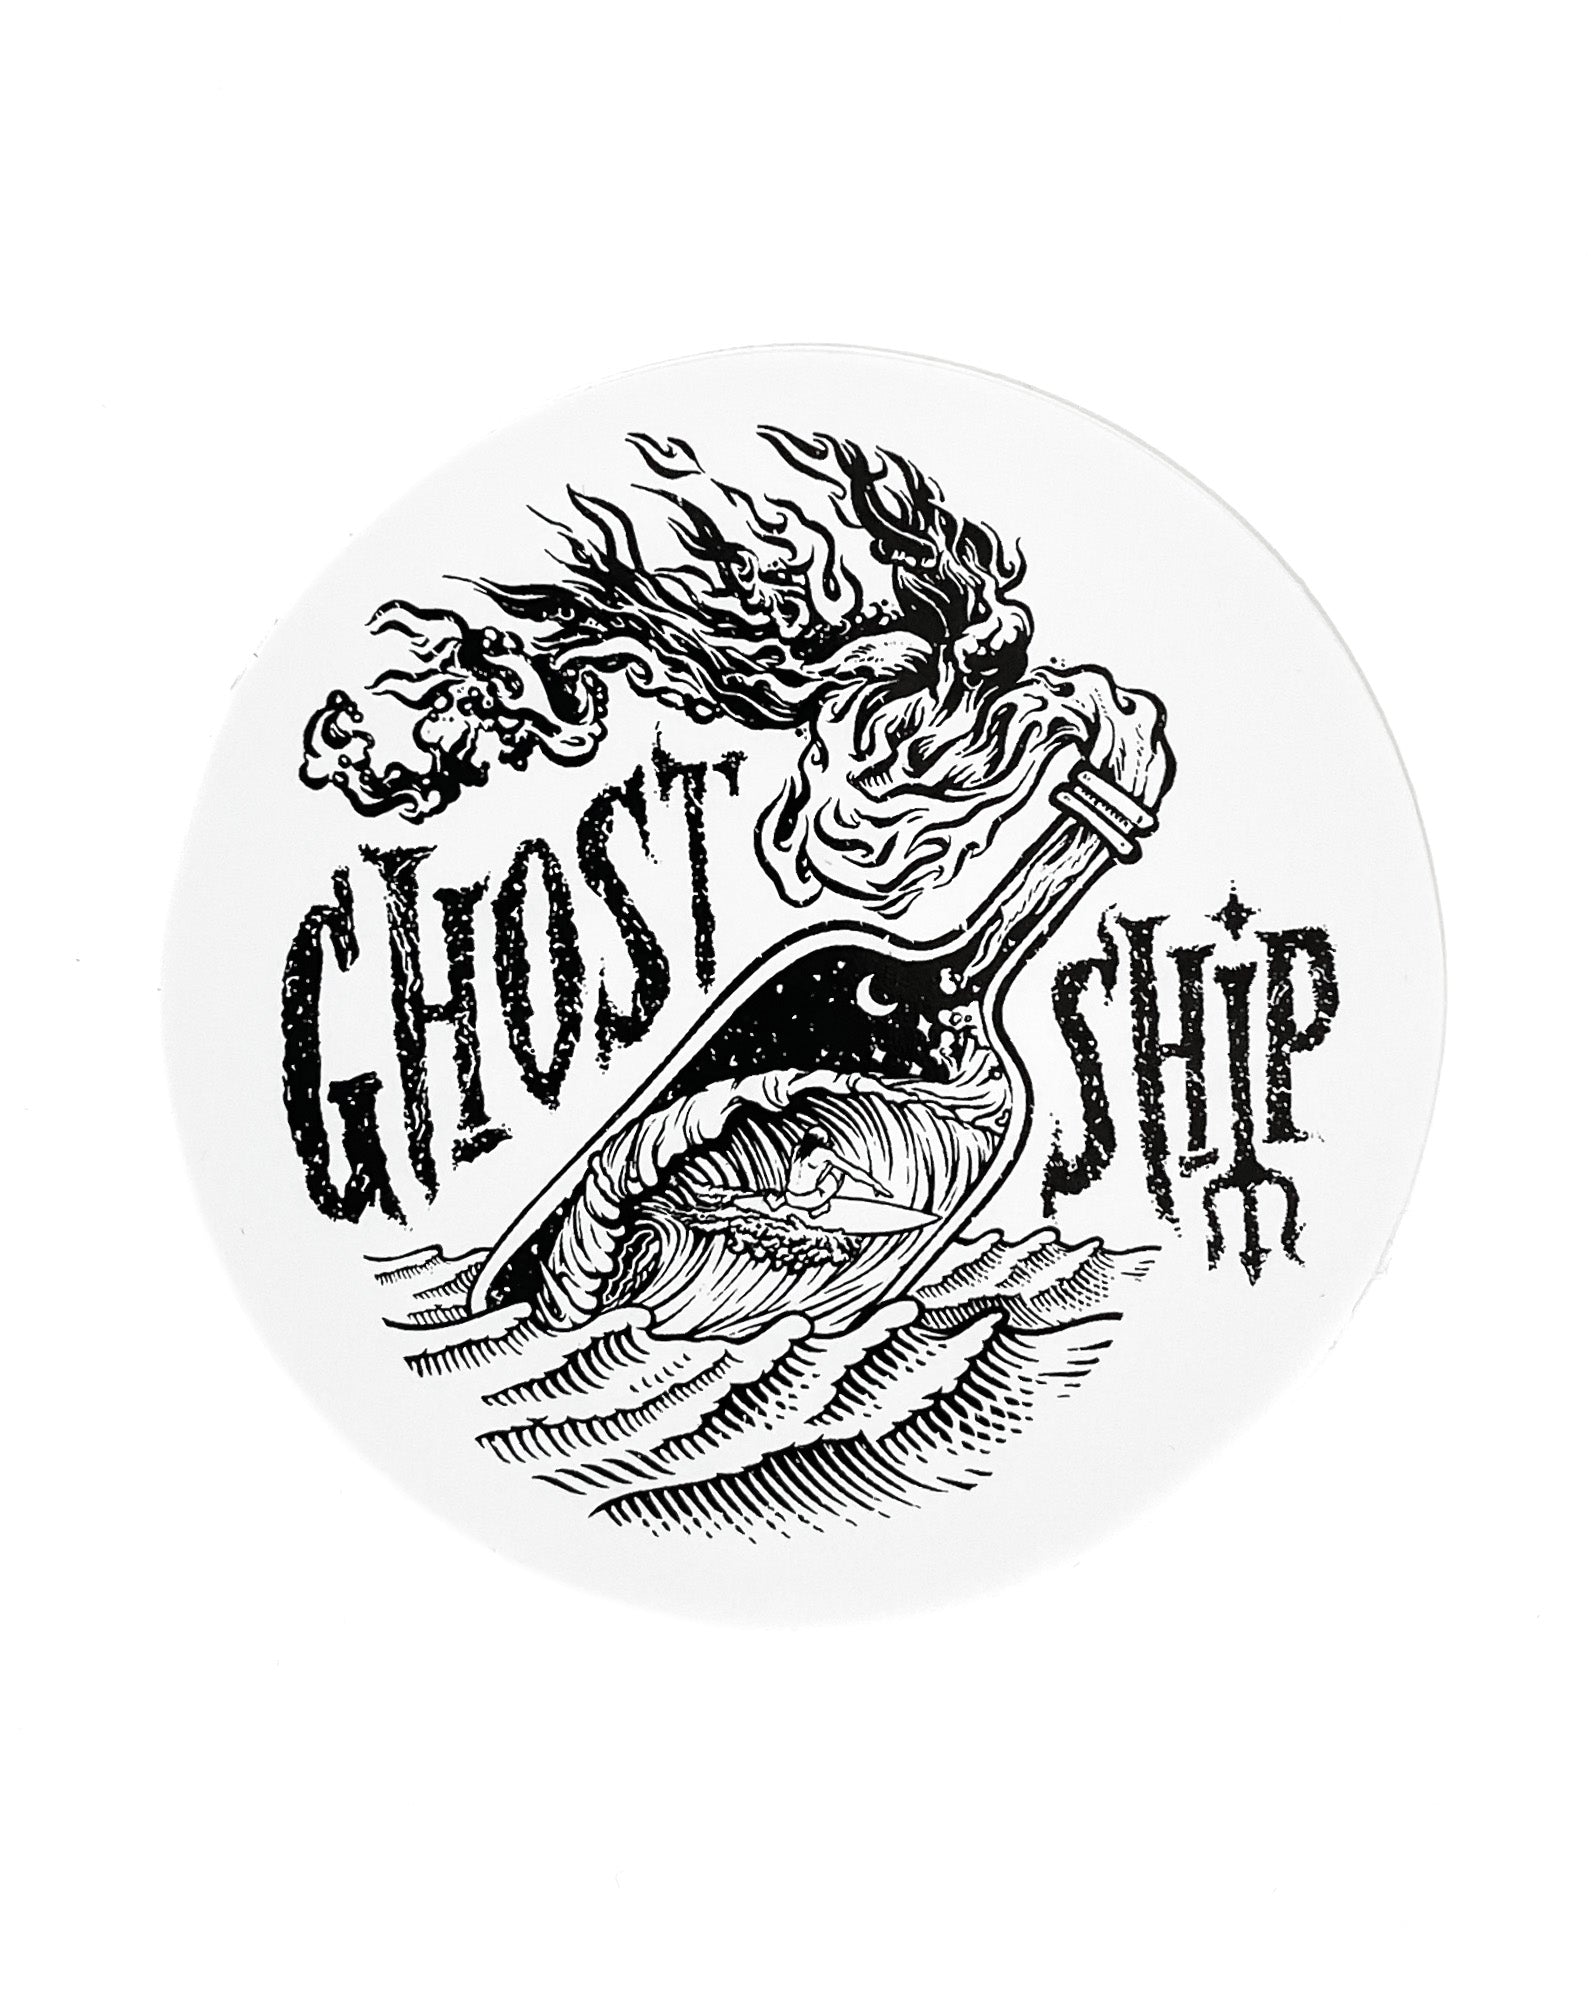 Tacklebox Gotvr Sticker - Tacklebox Gotvr Ghostsoftabor - Discover